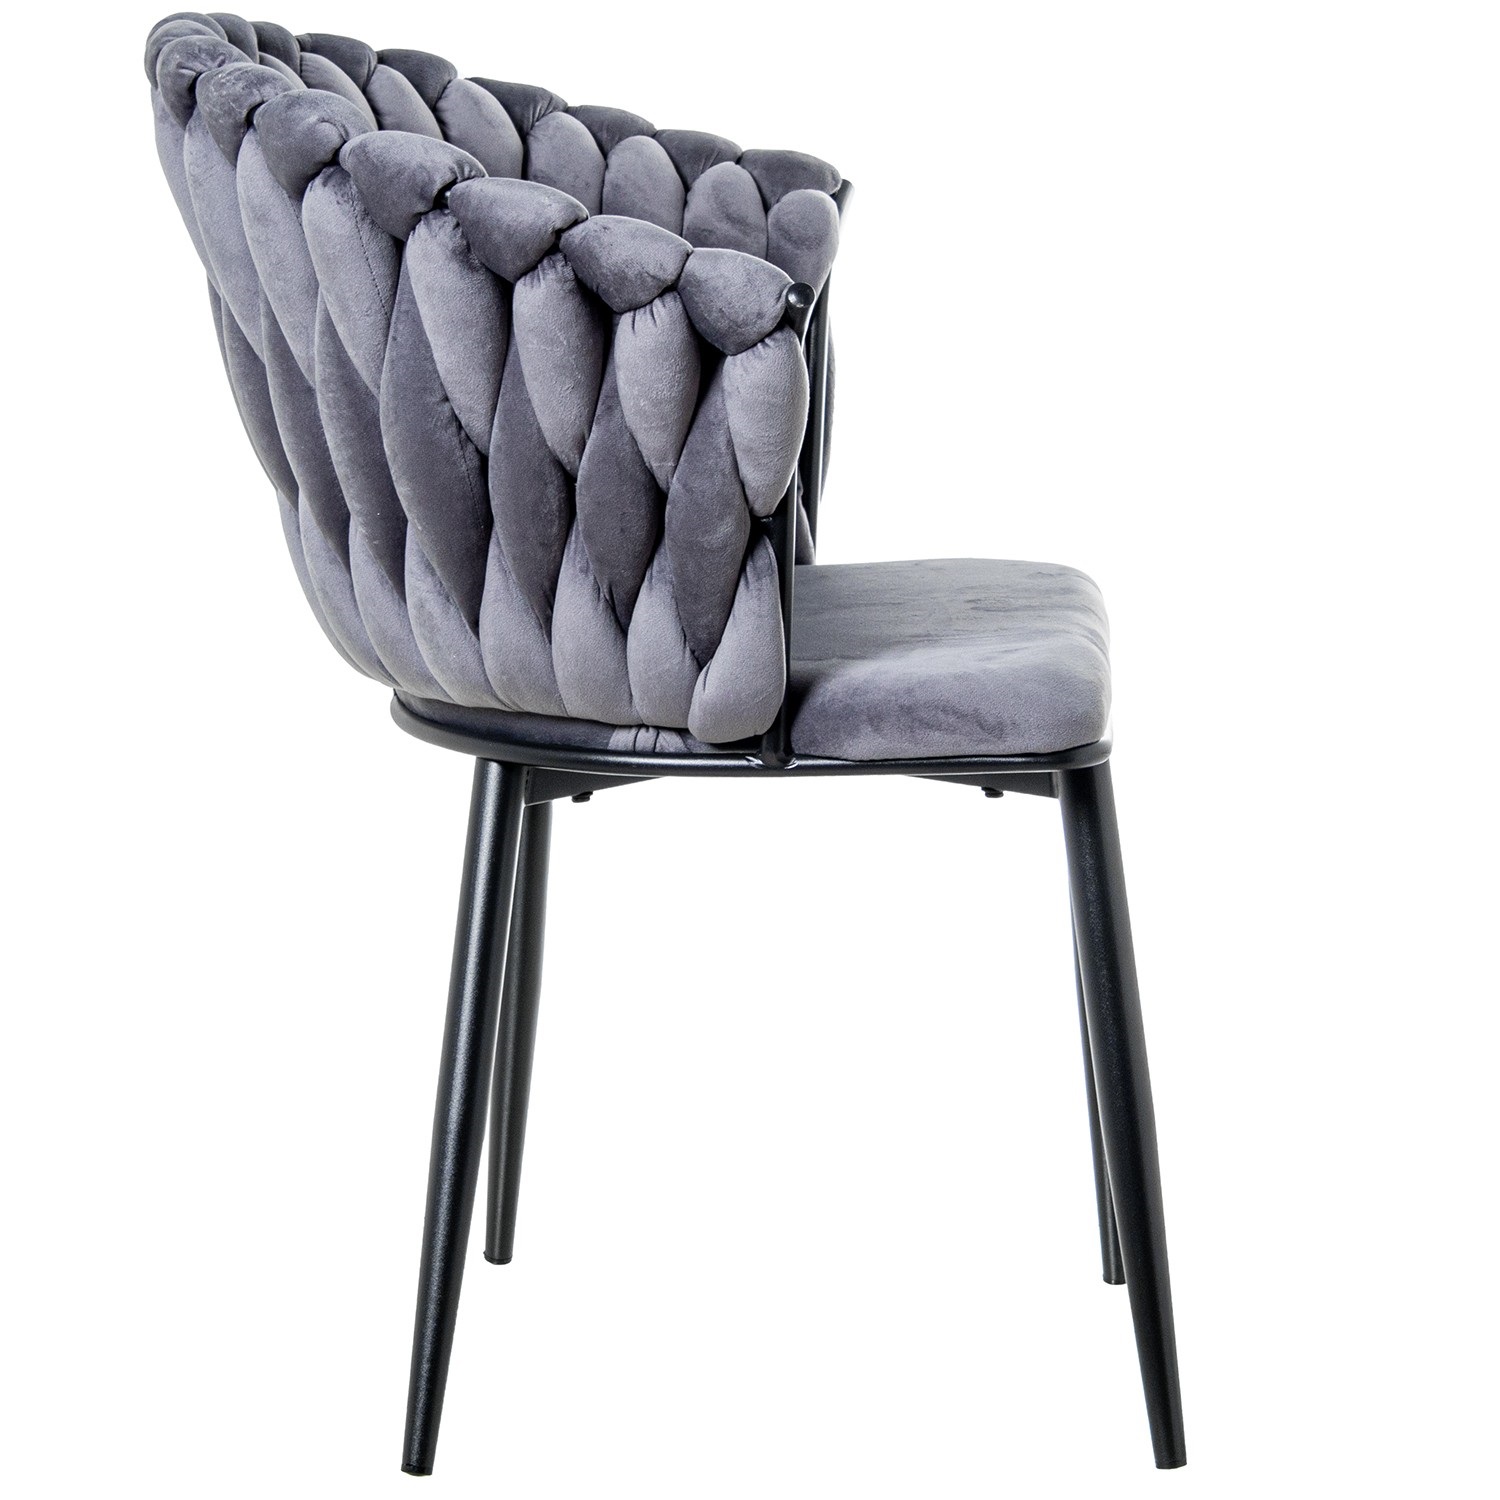 35326-silla-terciopelo-trenzado-gris-negro-5.jpg